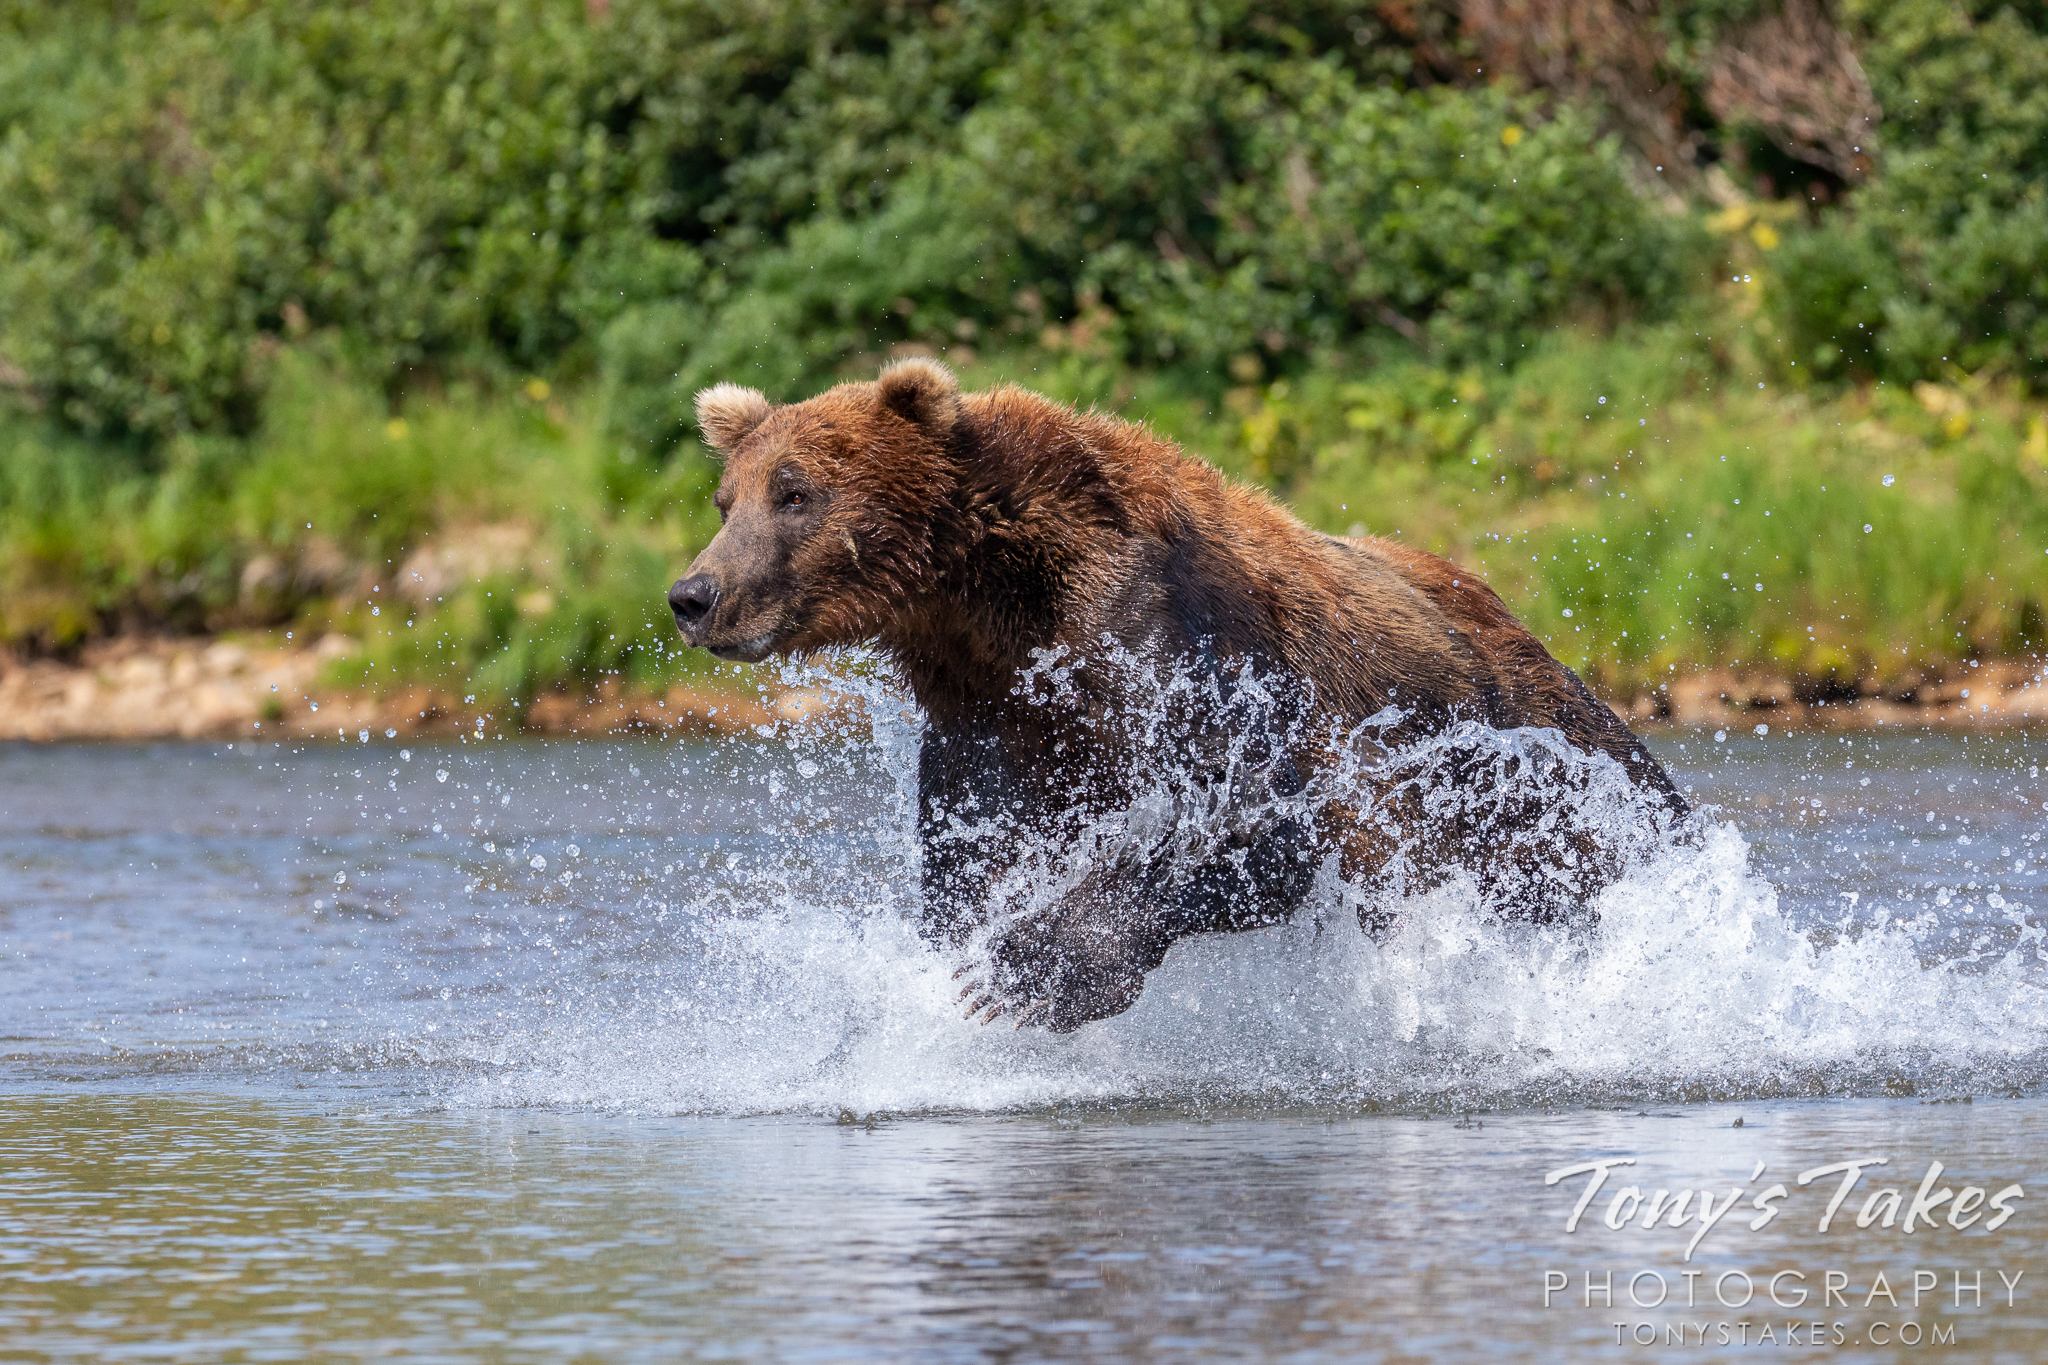 Alaskan brown bear in hot pursuit